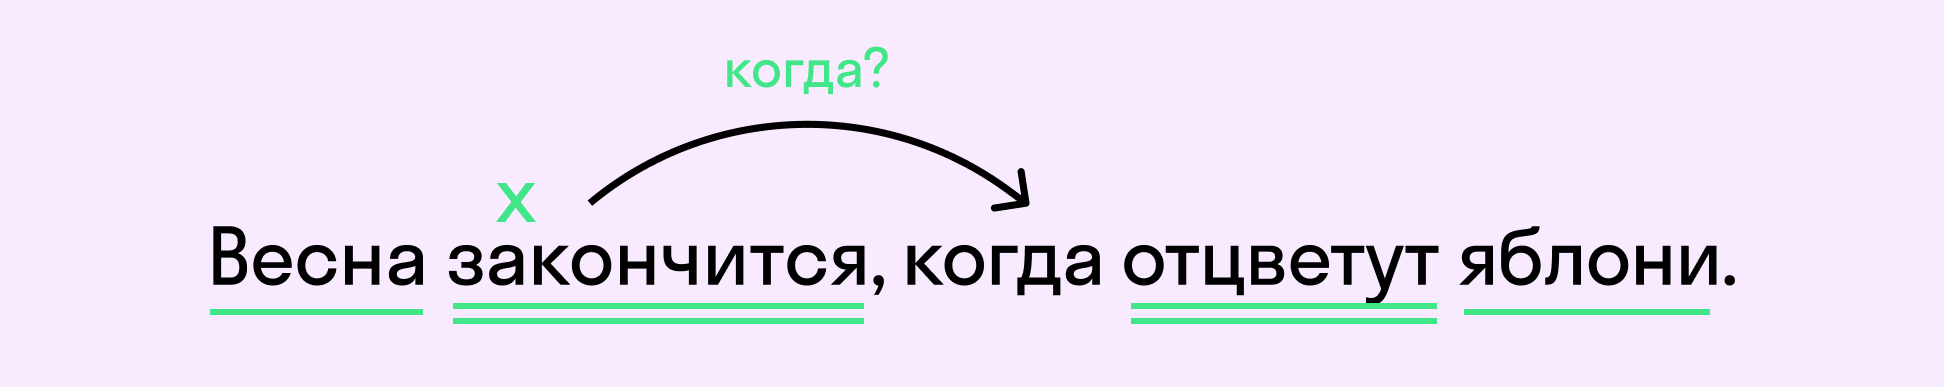 Пример сложноподчиненного предложения | exam-ans.ru